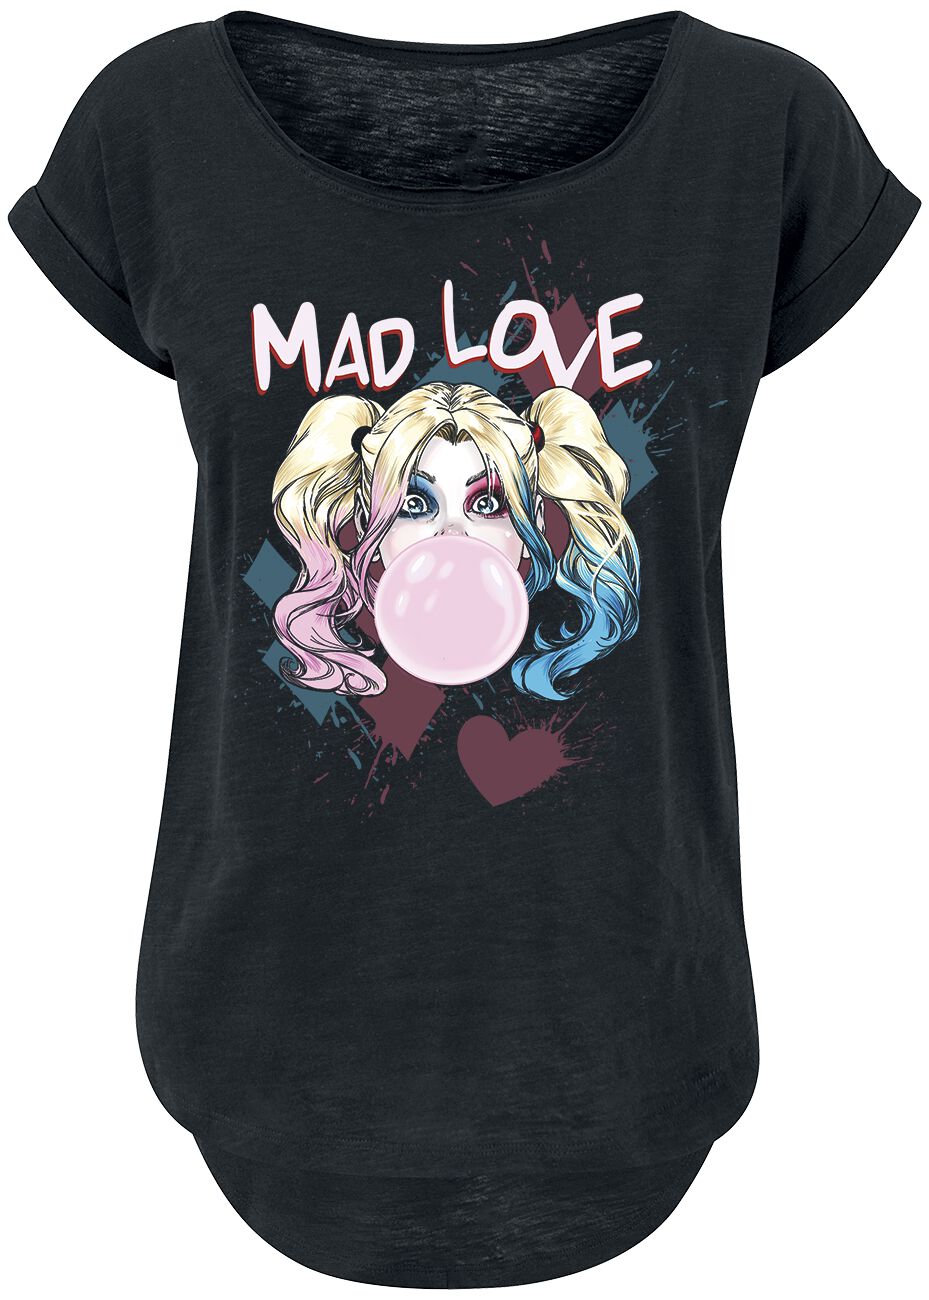 Harley Quinn - DC Comics T-Shirt - Mad Love - XS bis 3XL - für Damen - Größe XS - schwarz  - EMP exklusives Merchandise!